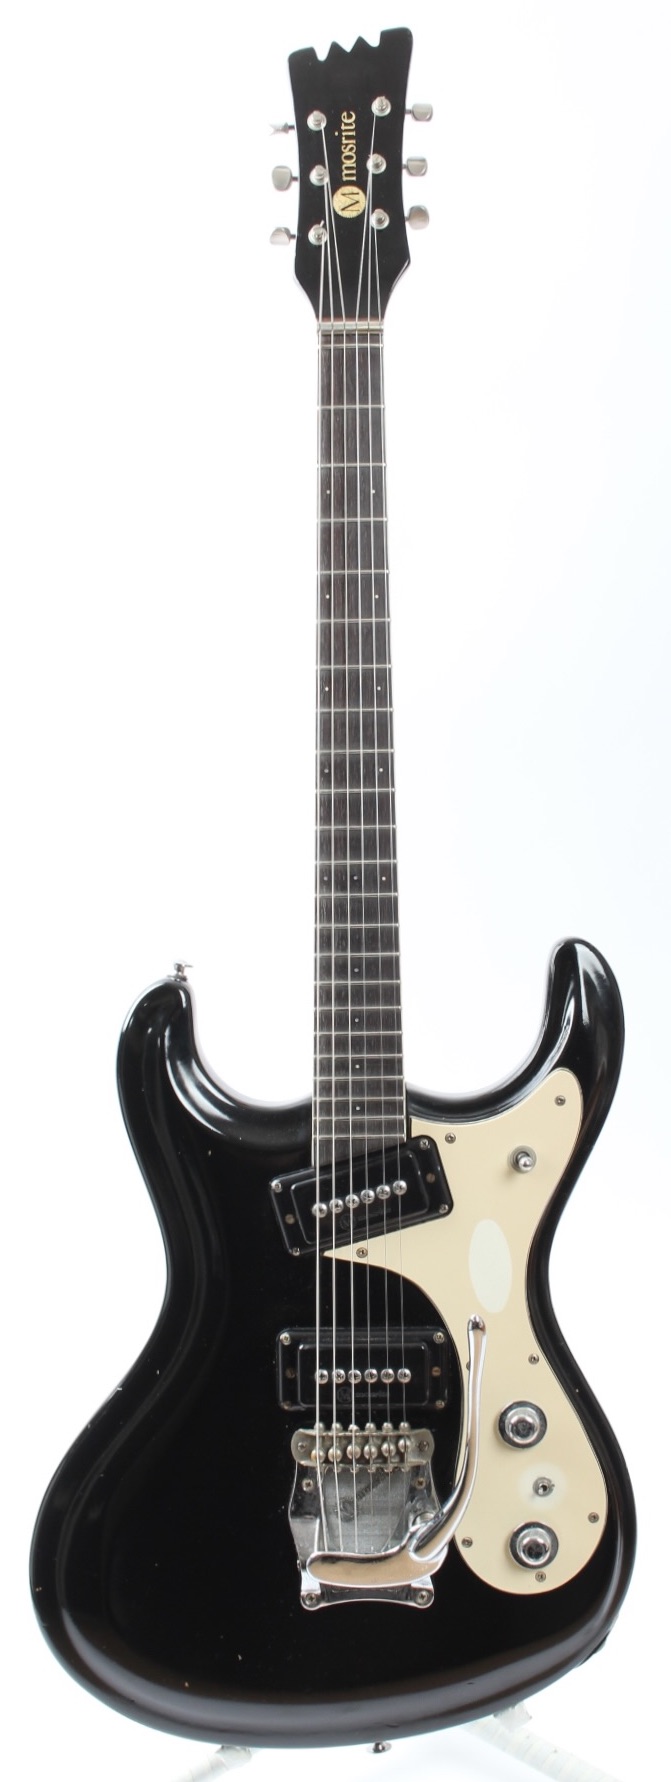 Mosrite Mark I '65 Reissue 1980 Black Guitar For Sale Yeahman's 